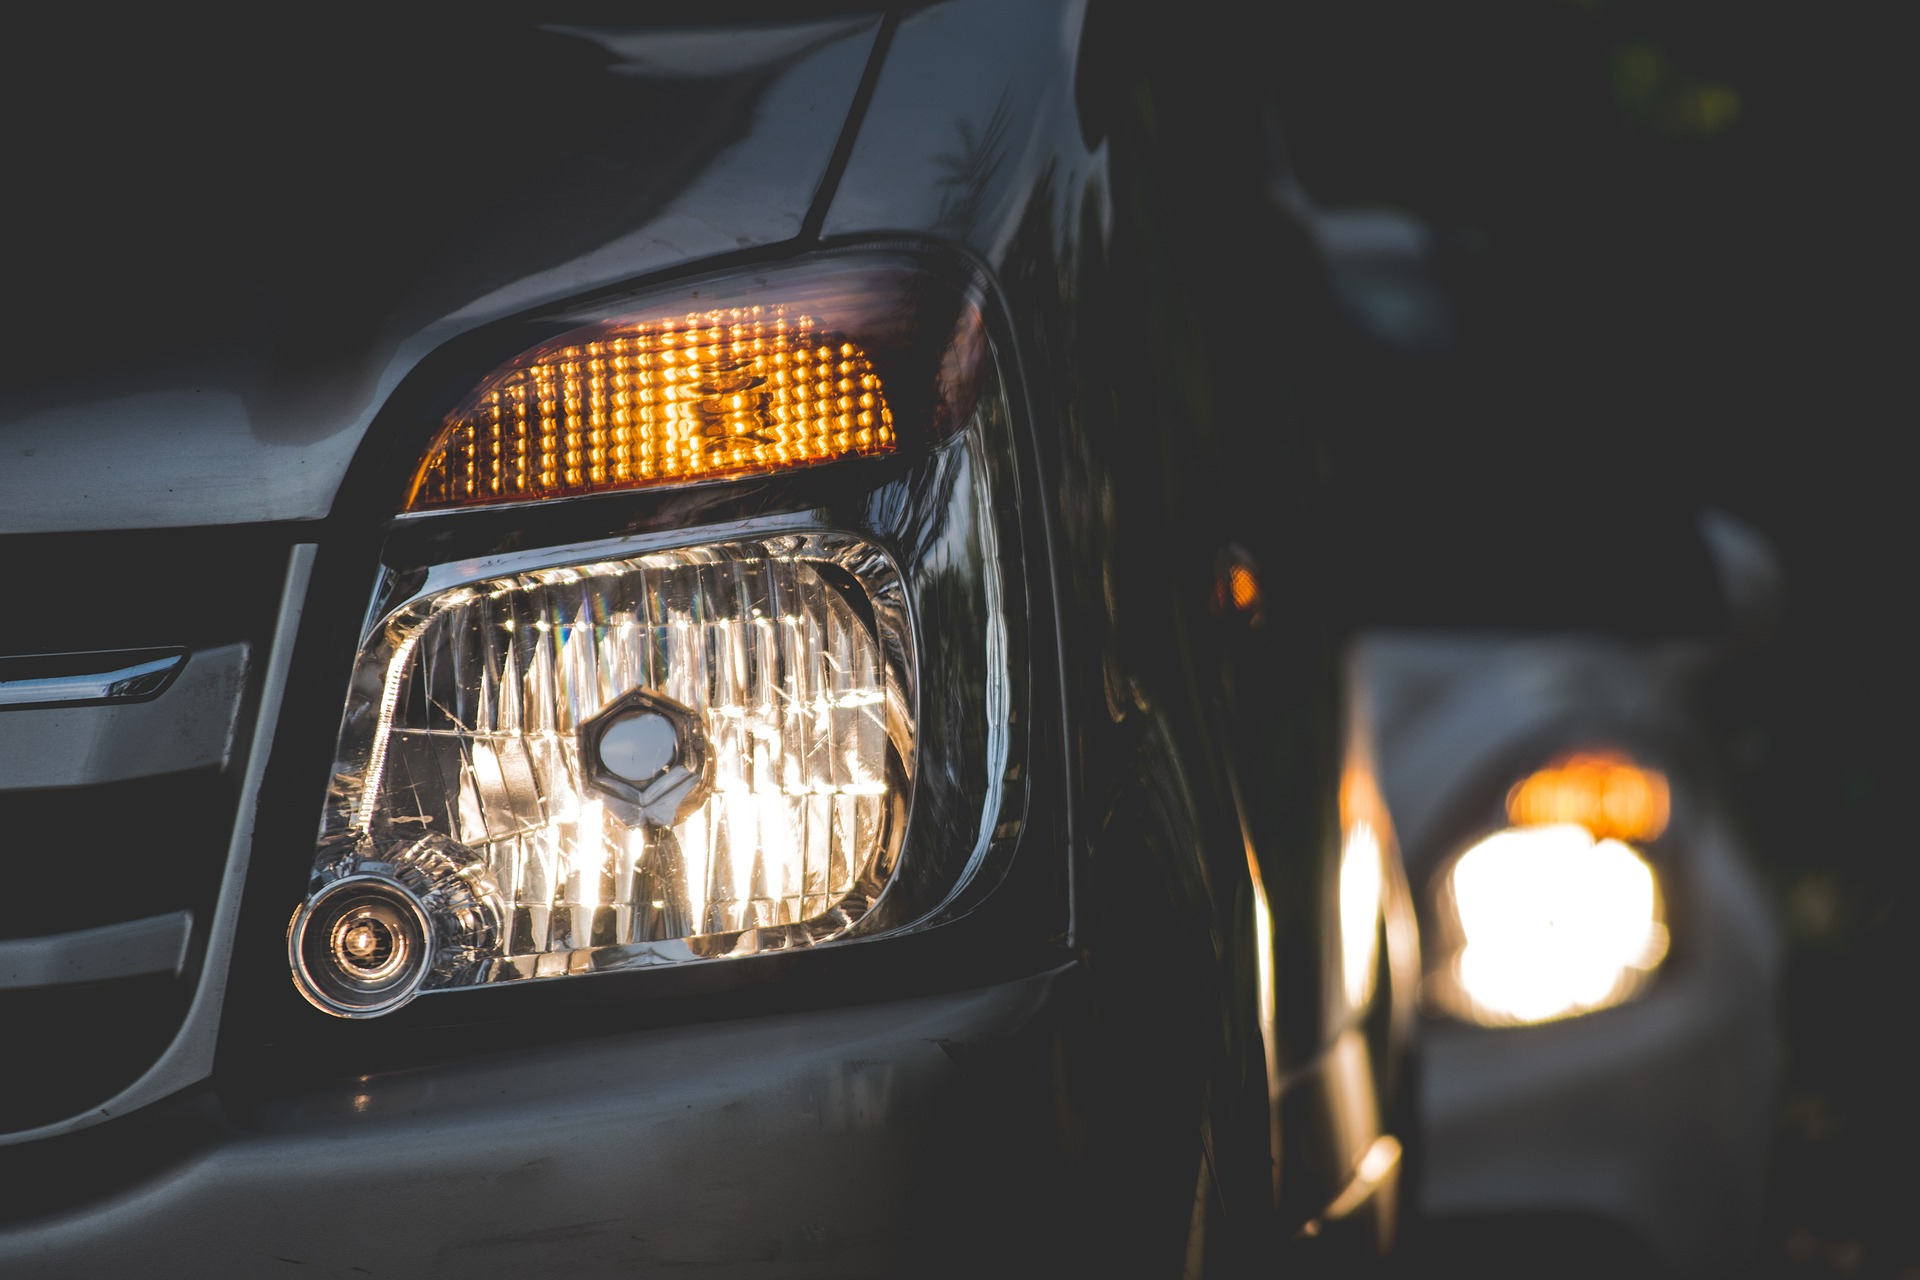 Osvaldo | Opinión respecto de la utilización de las luces en los autos en días de mal clima